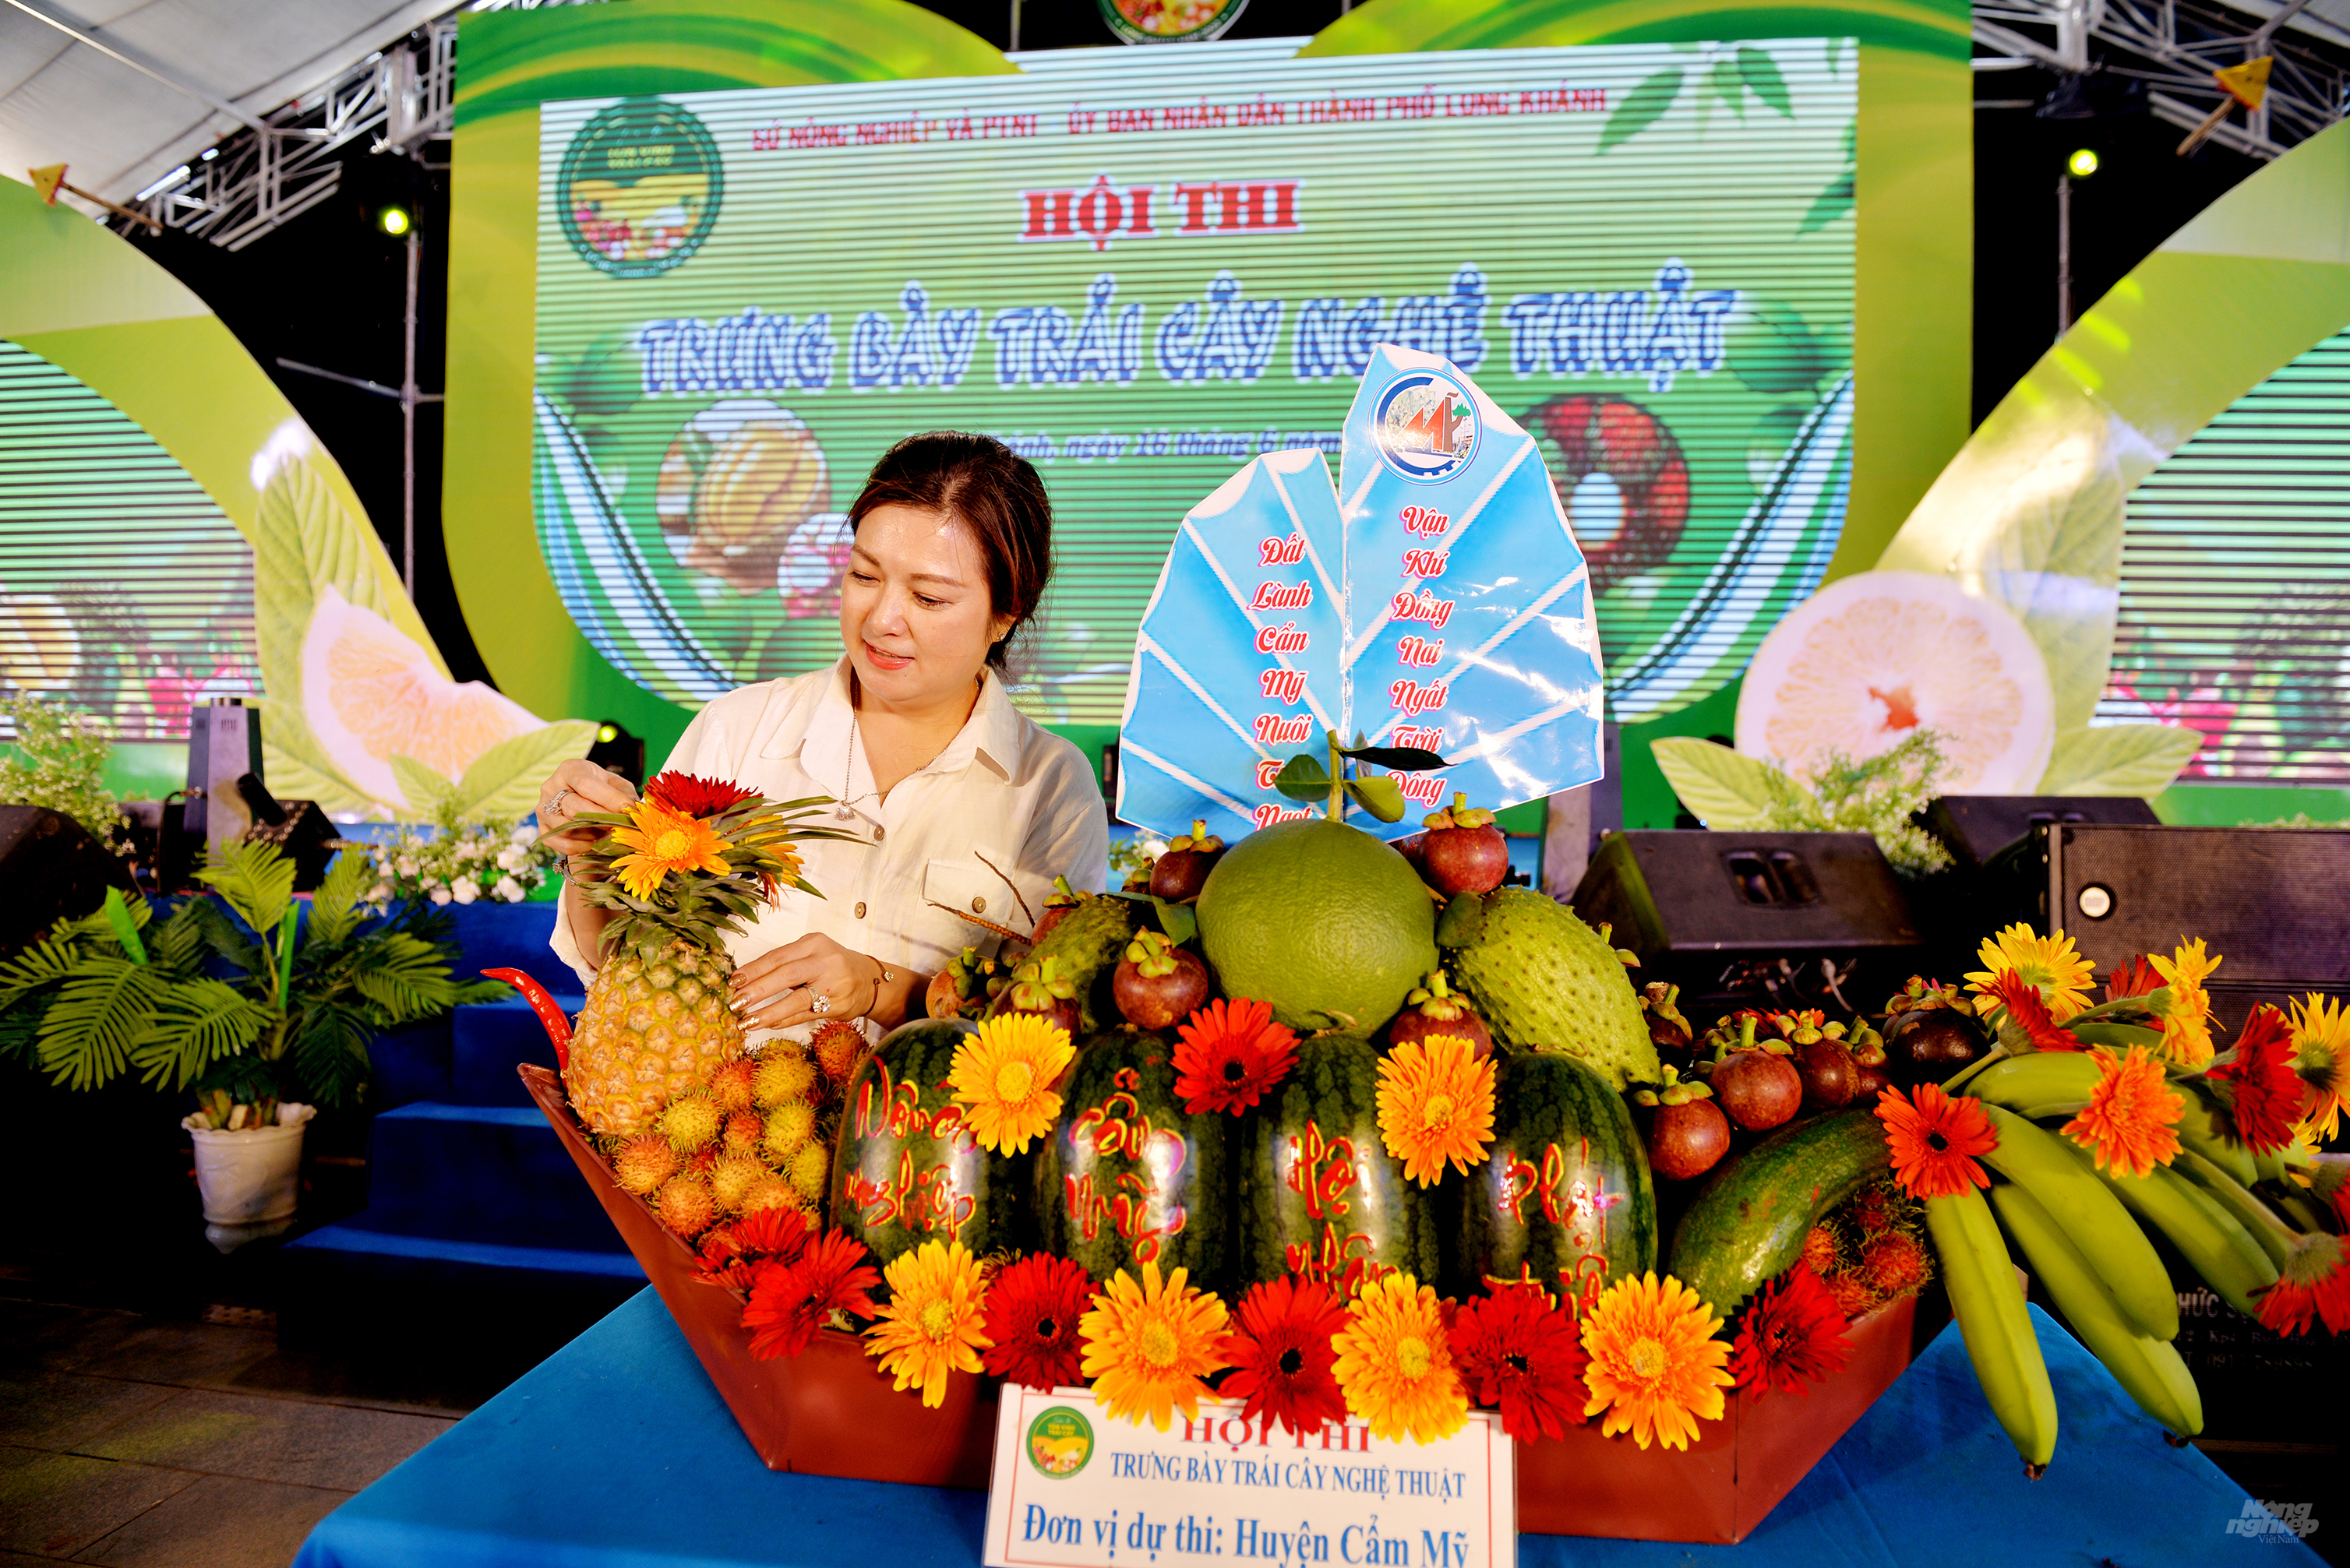 Tuần lễ tôn vinh trái cây và chợ phiên nông nghiệp đô thị Tây Nam' được tổ chức với nhiều hoạt động sôi nổi, nhiều du khách rất ấn tượng với hội thi trưng bày trái cây nghệ thuật. Ảnh: Hoàng Long.